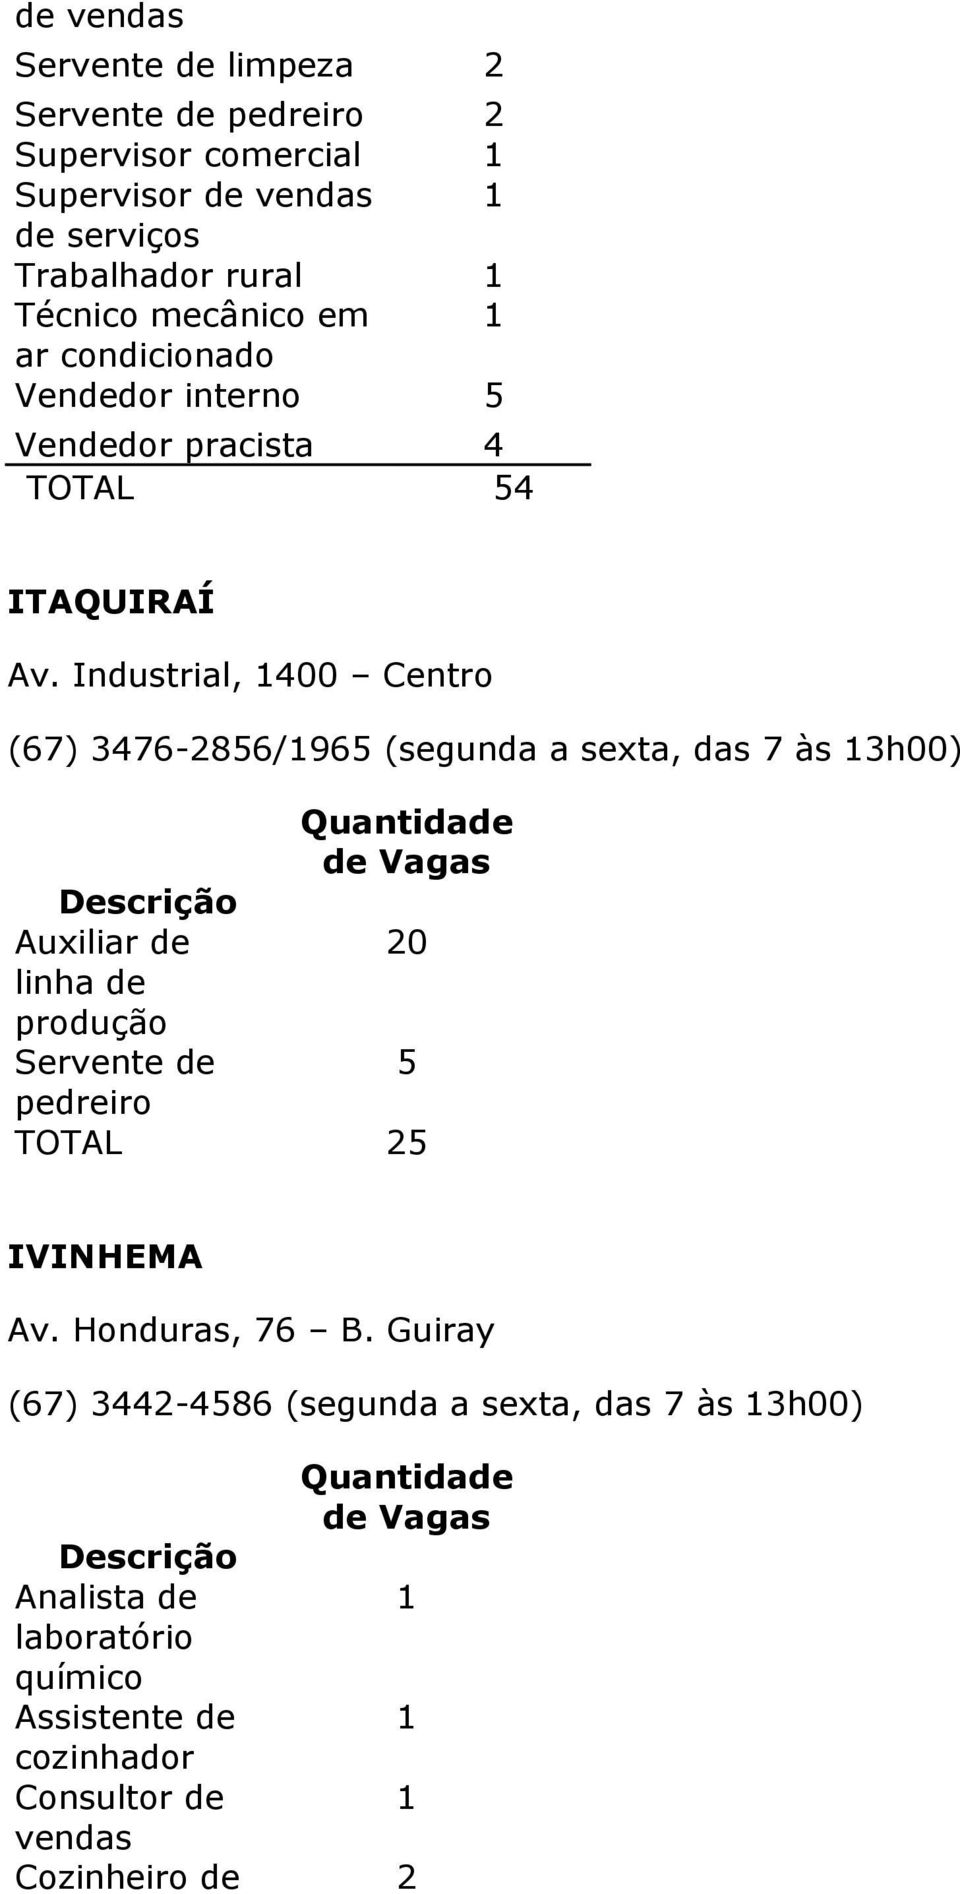 Industrial, 400 Centro (67) 3476-856/965 (segunda a sexta, das 7 às 3h00) linha de produção Servente de pedreiro 0 5 TOTAL 5